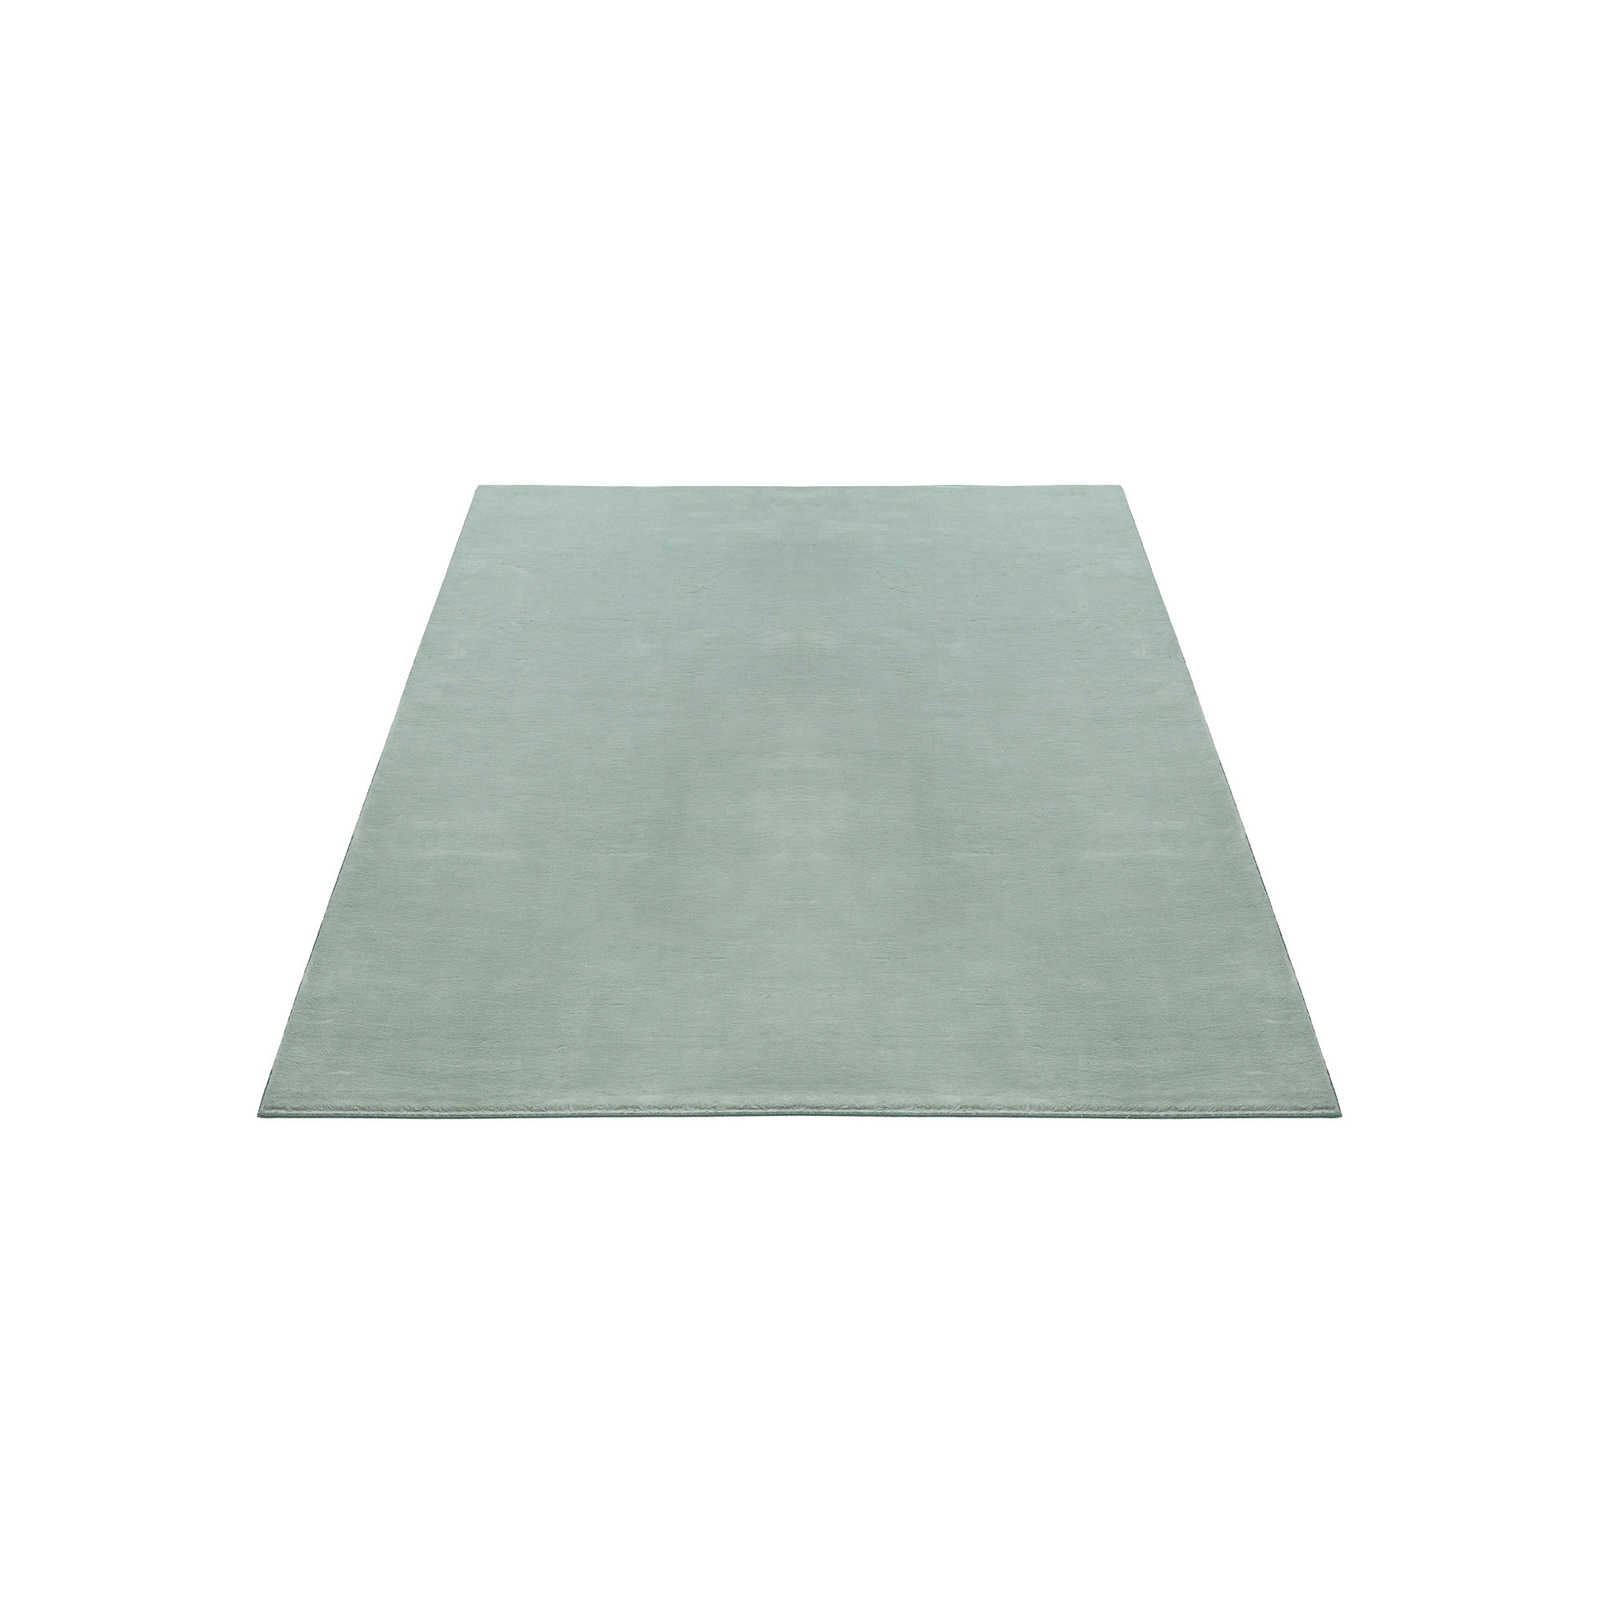 Zacht hoogpolig tapijt in zachtgroen - 200 x 140 cm
